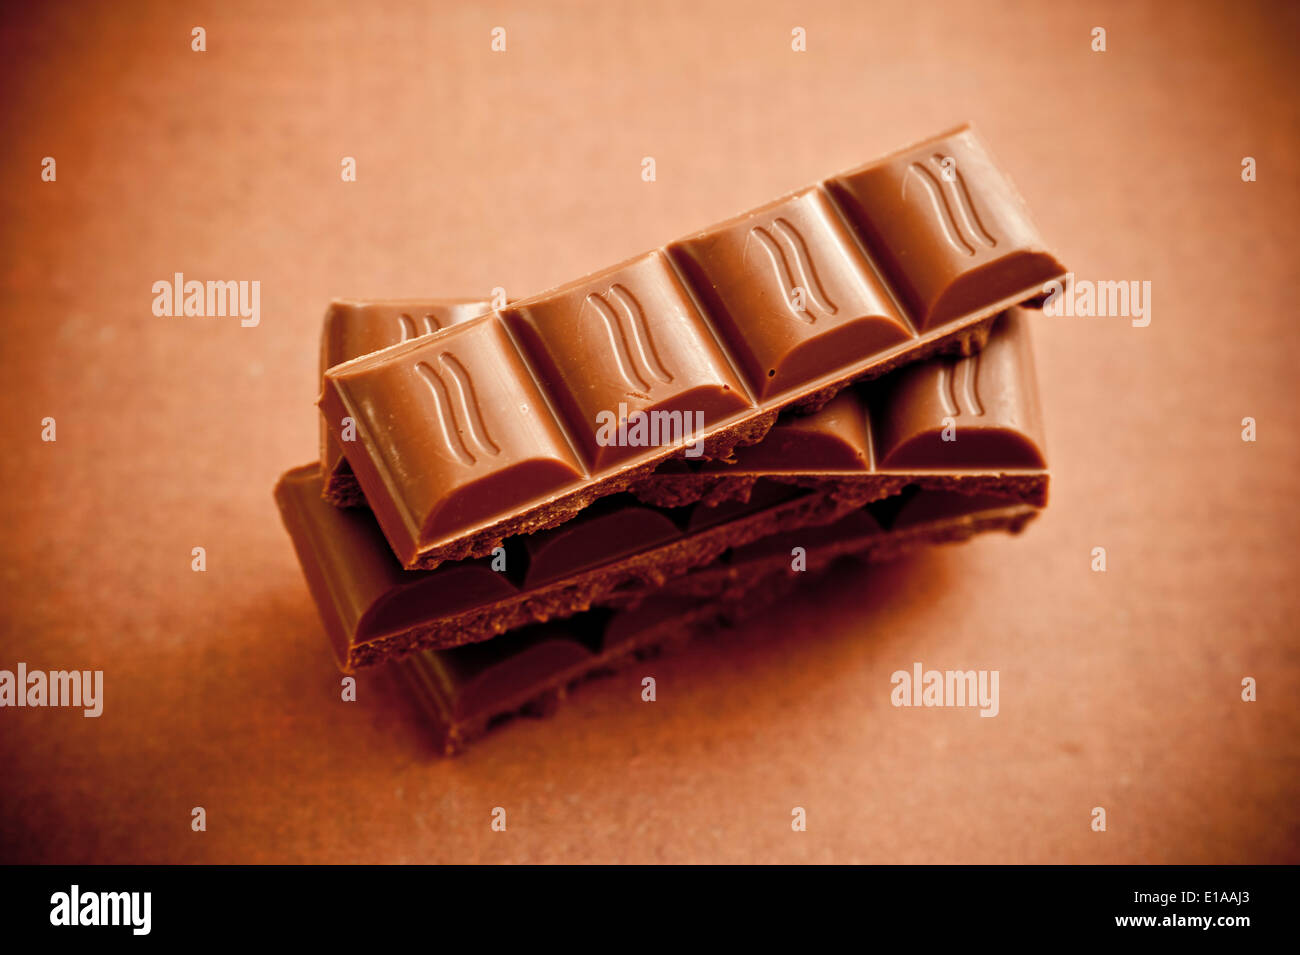 chocolate bars Stock Photo